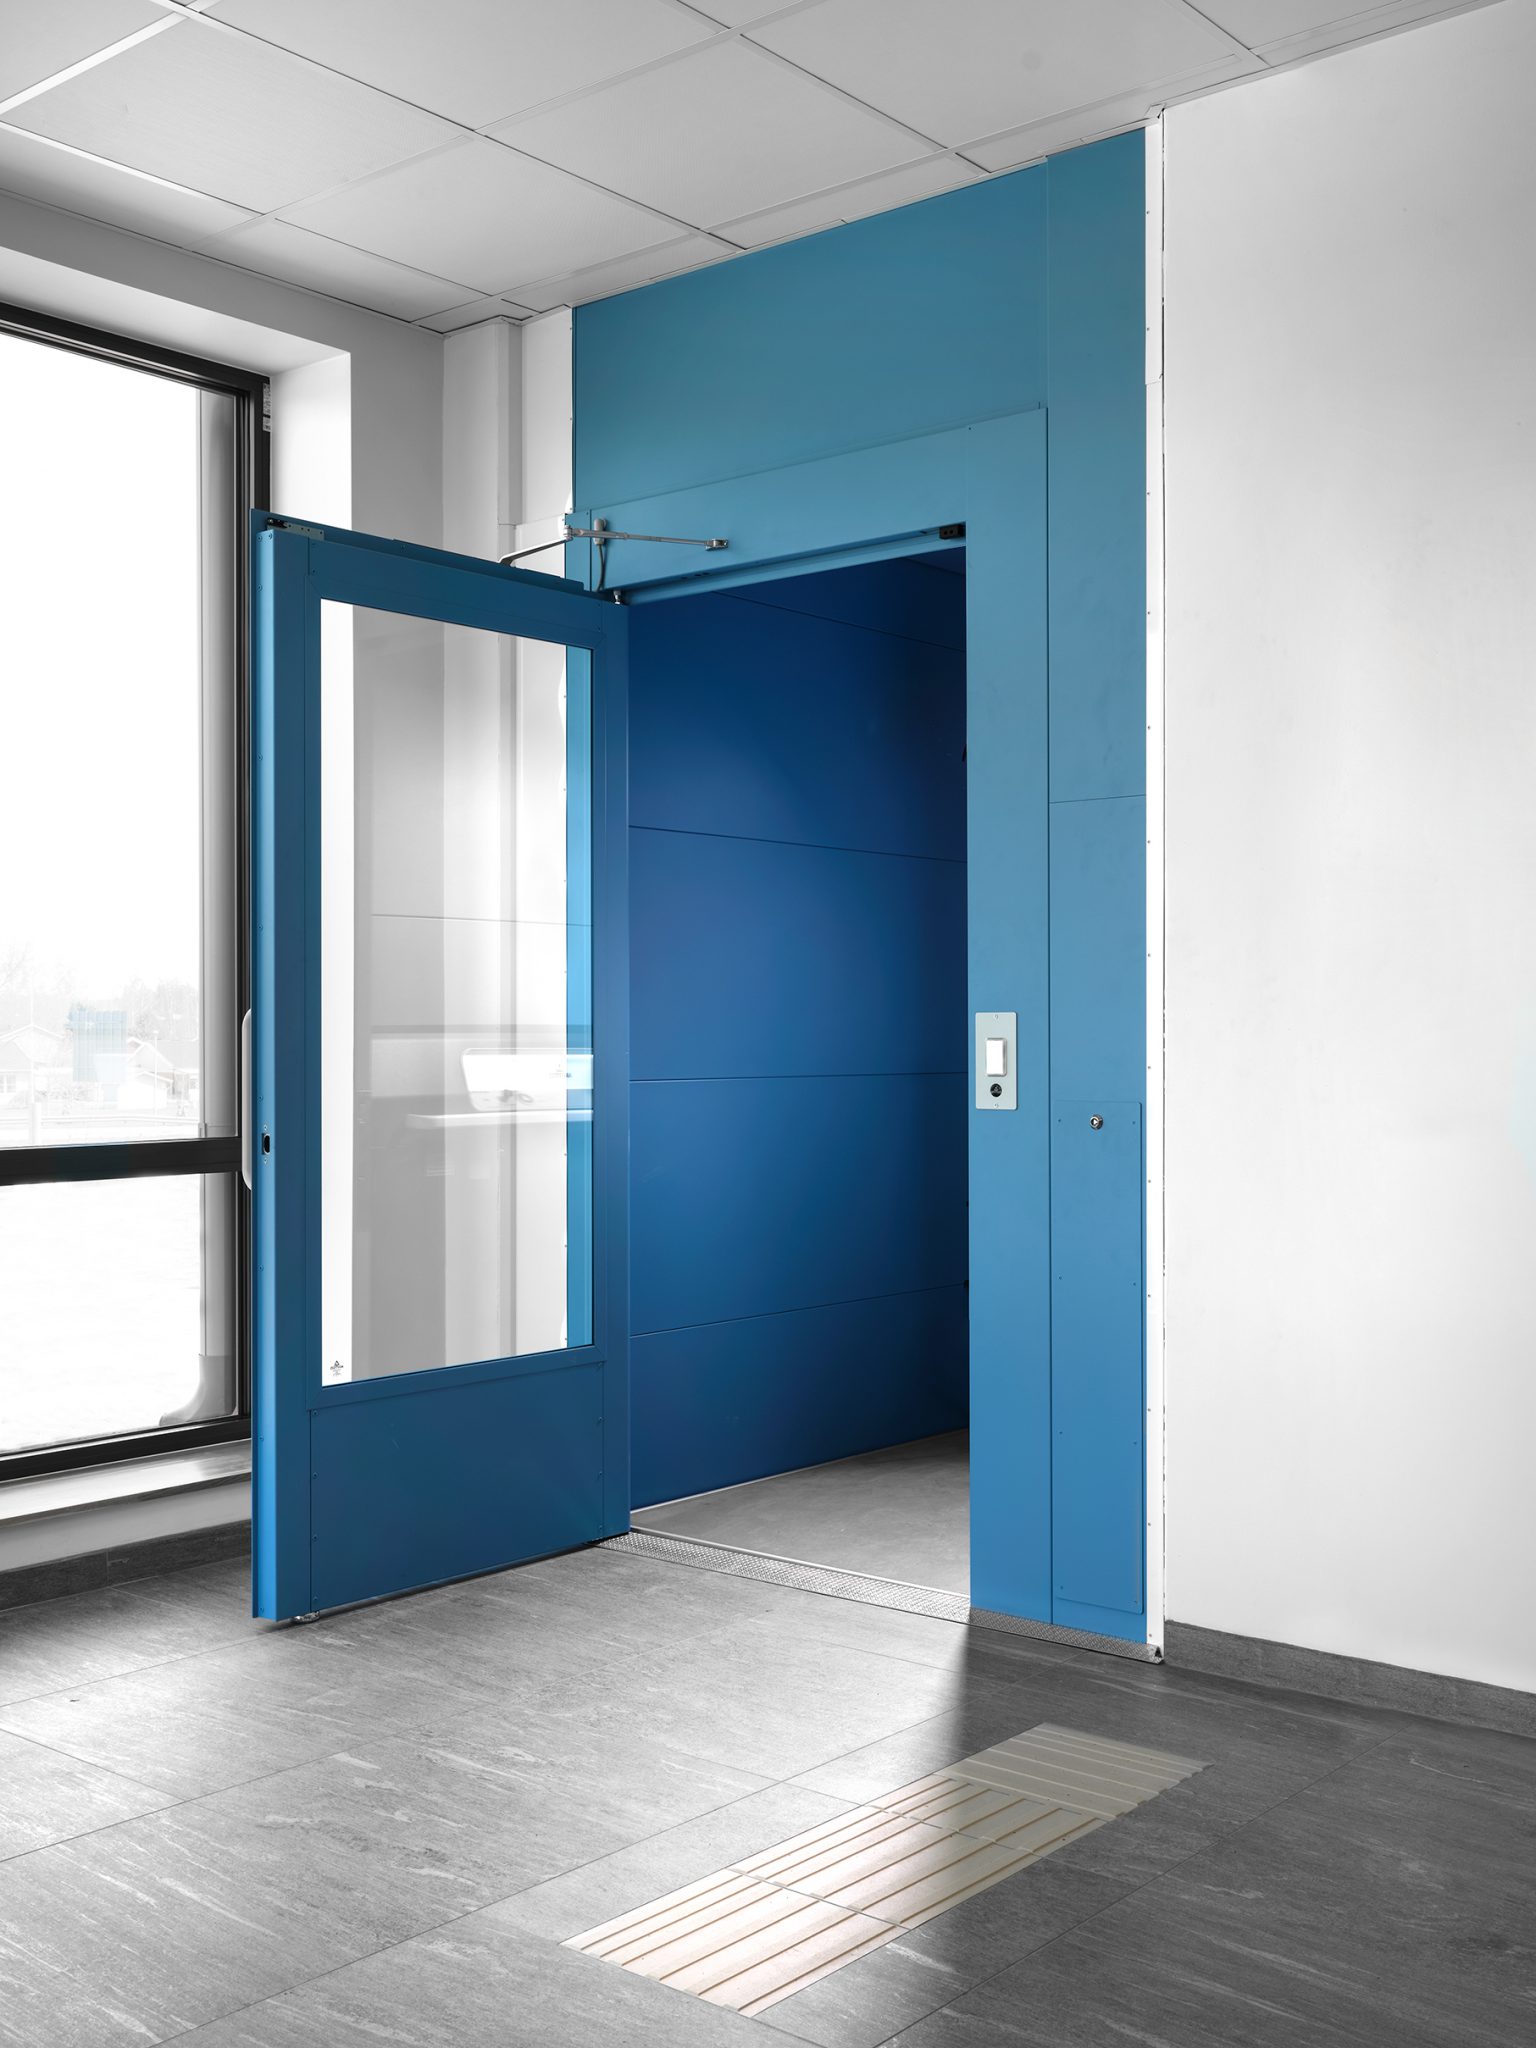 A blue Aritco PublicLift Access elevator at Målilla school